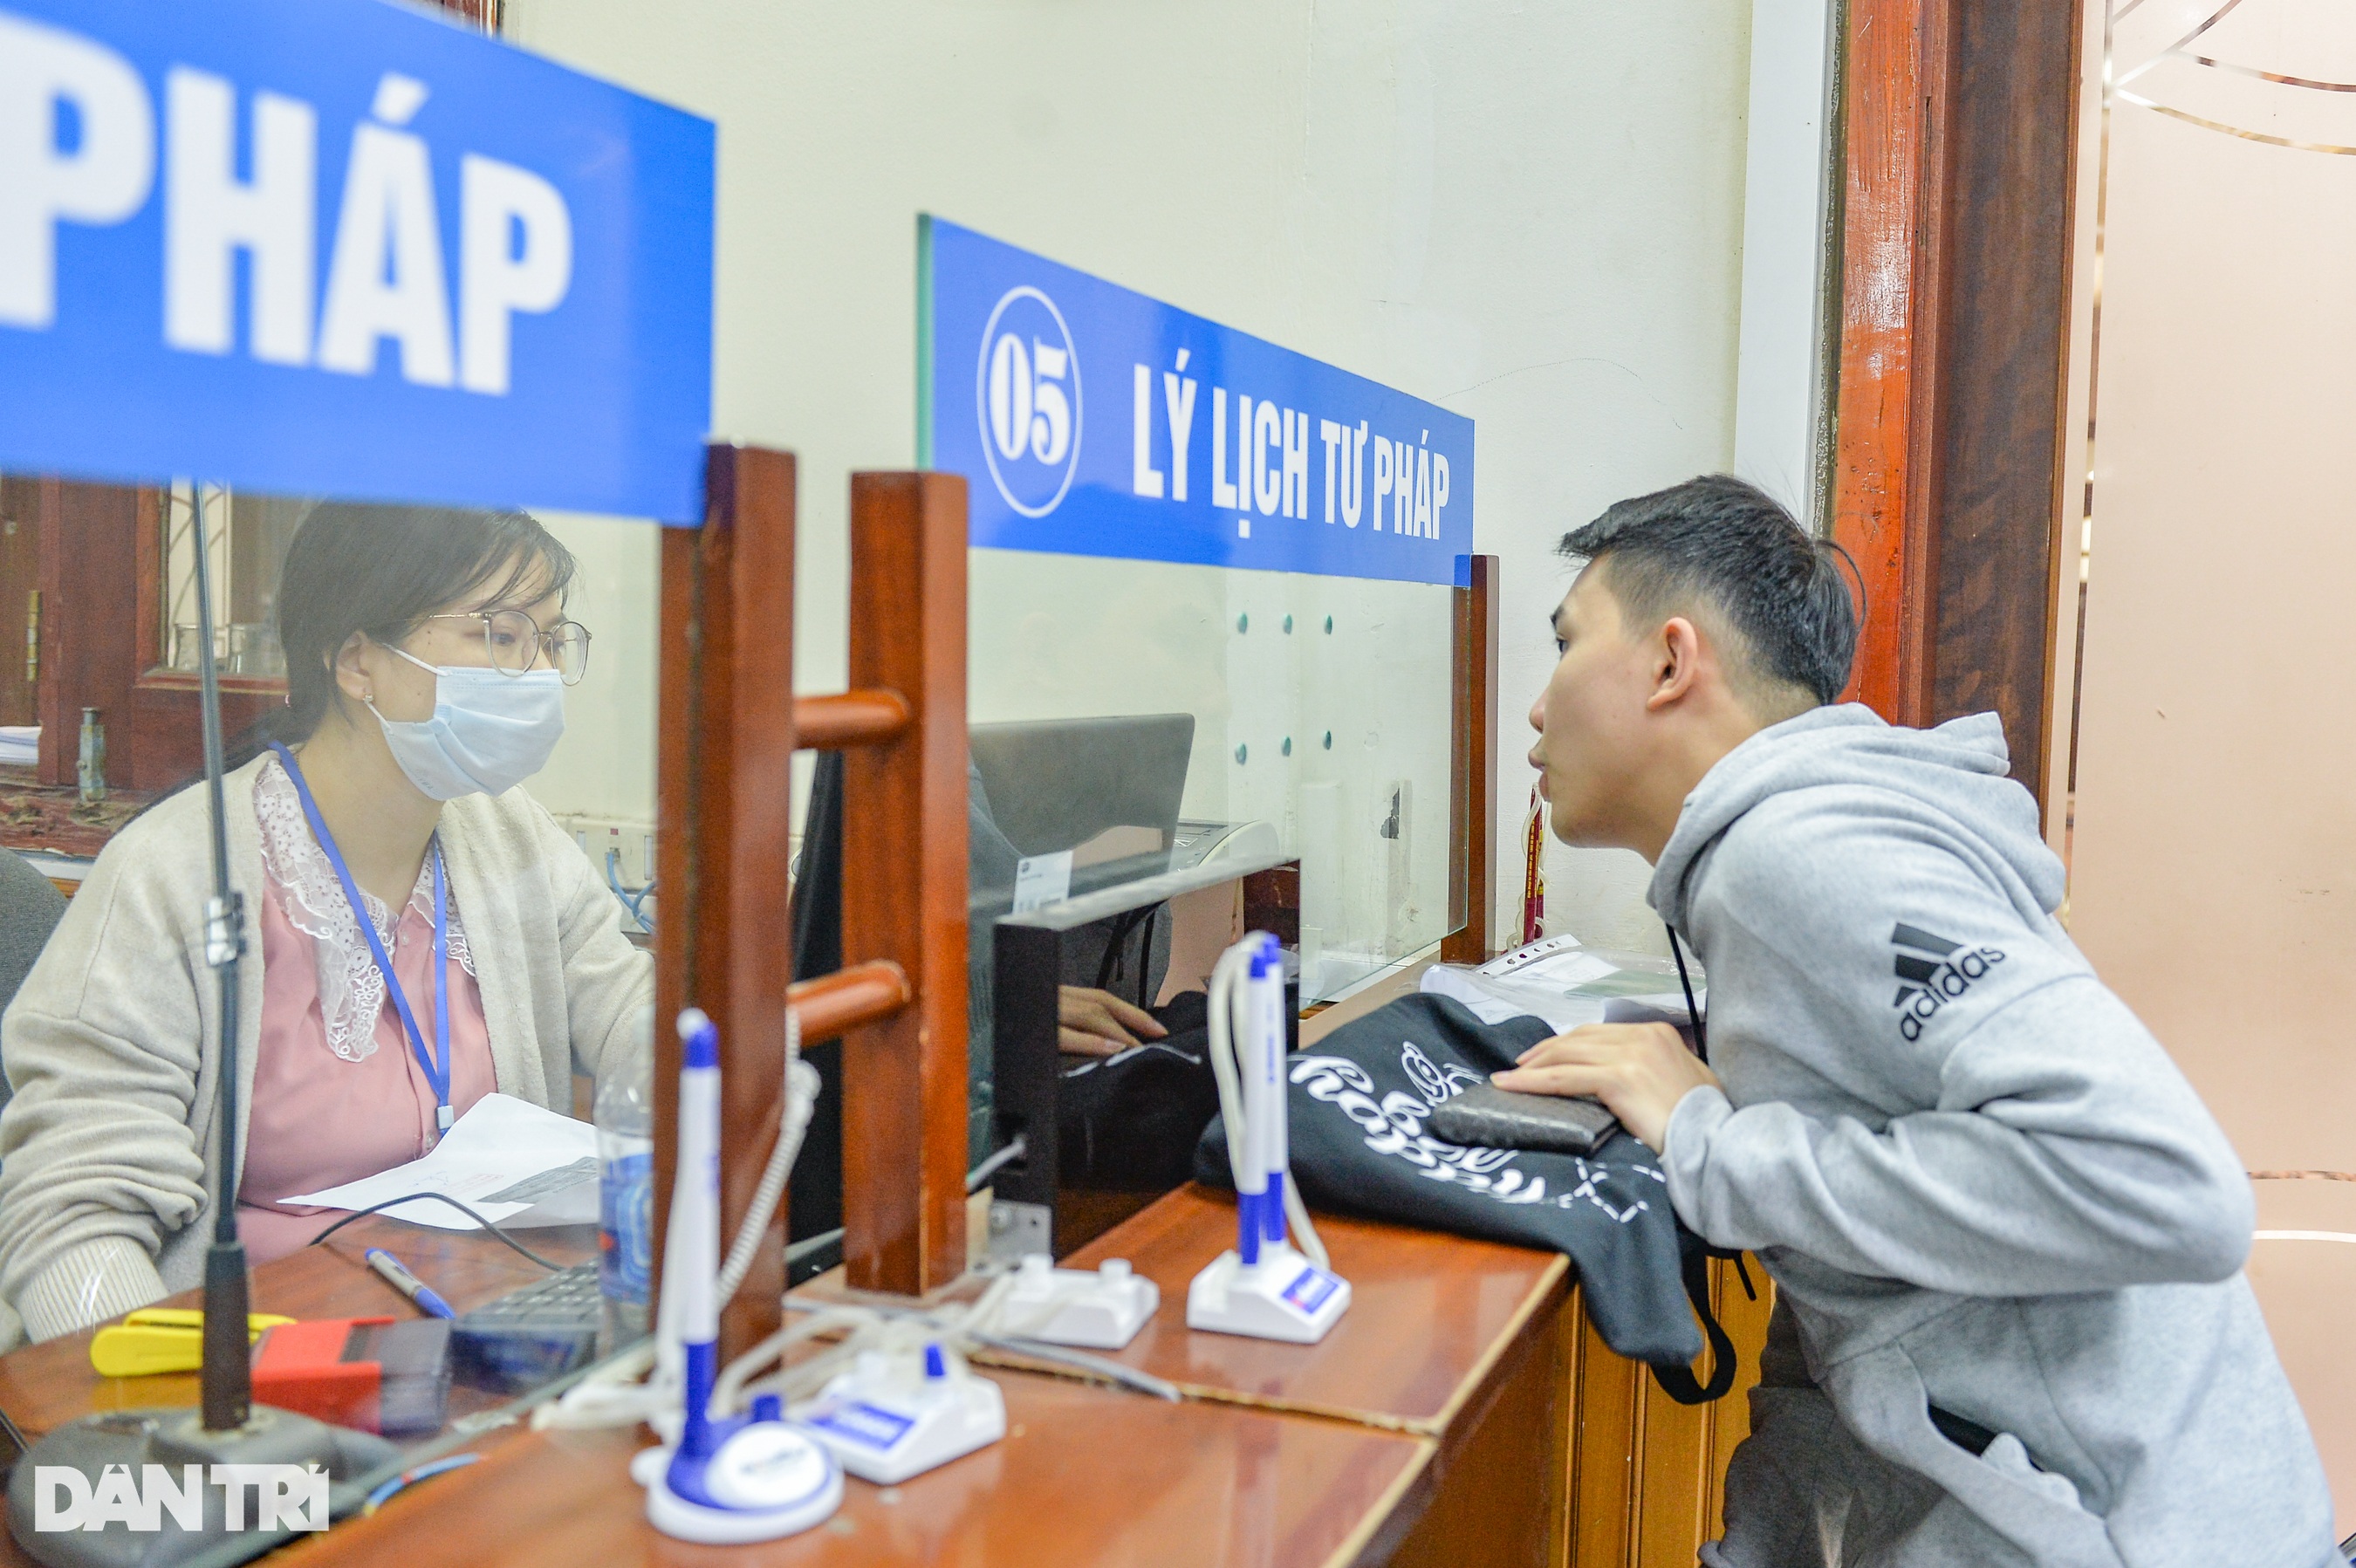 Hà Nội: Xếp hàng từ 4h sáng xin cấp phiếu lý lịch tư pháp - 10